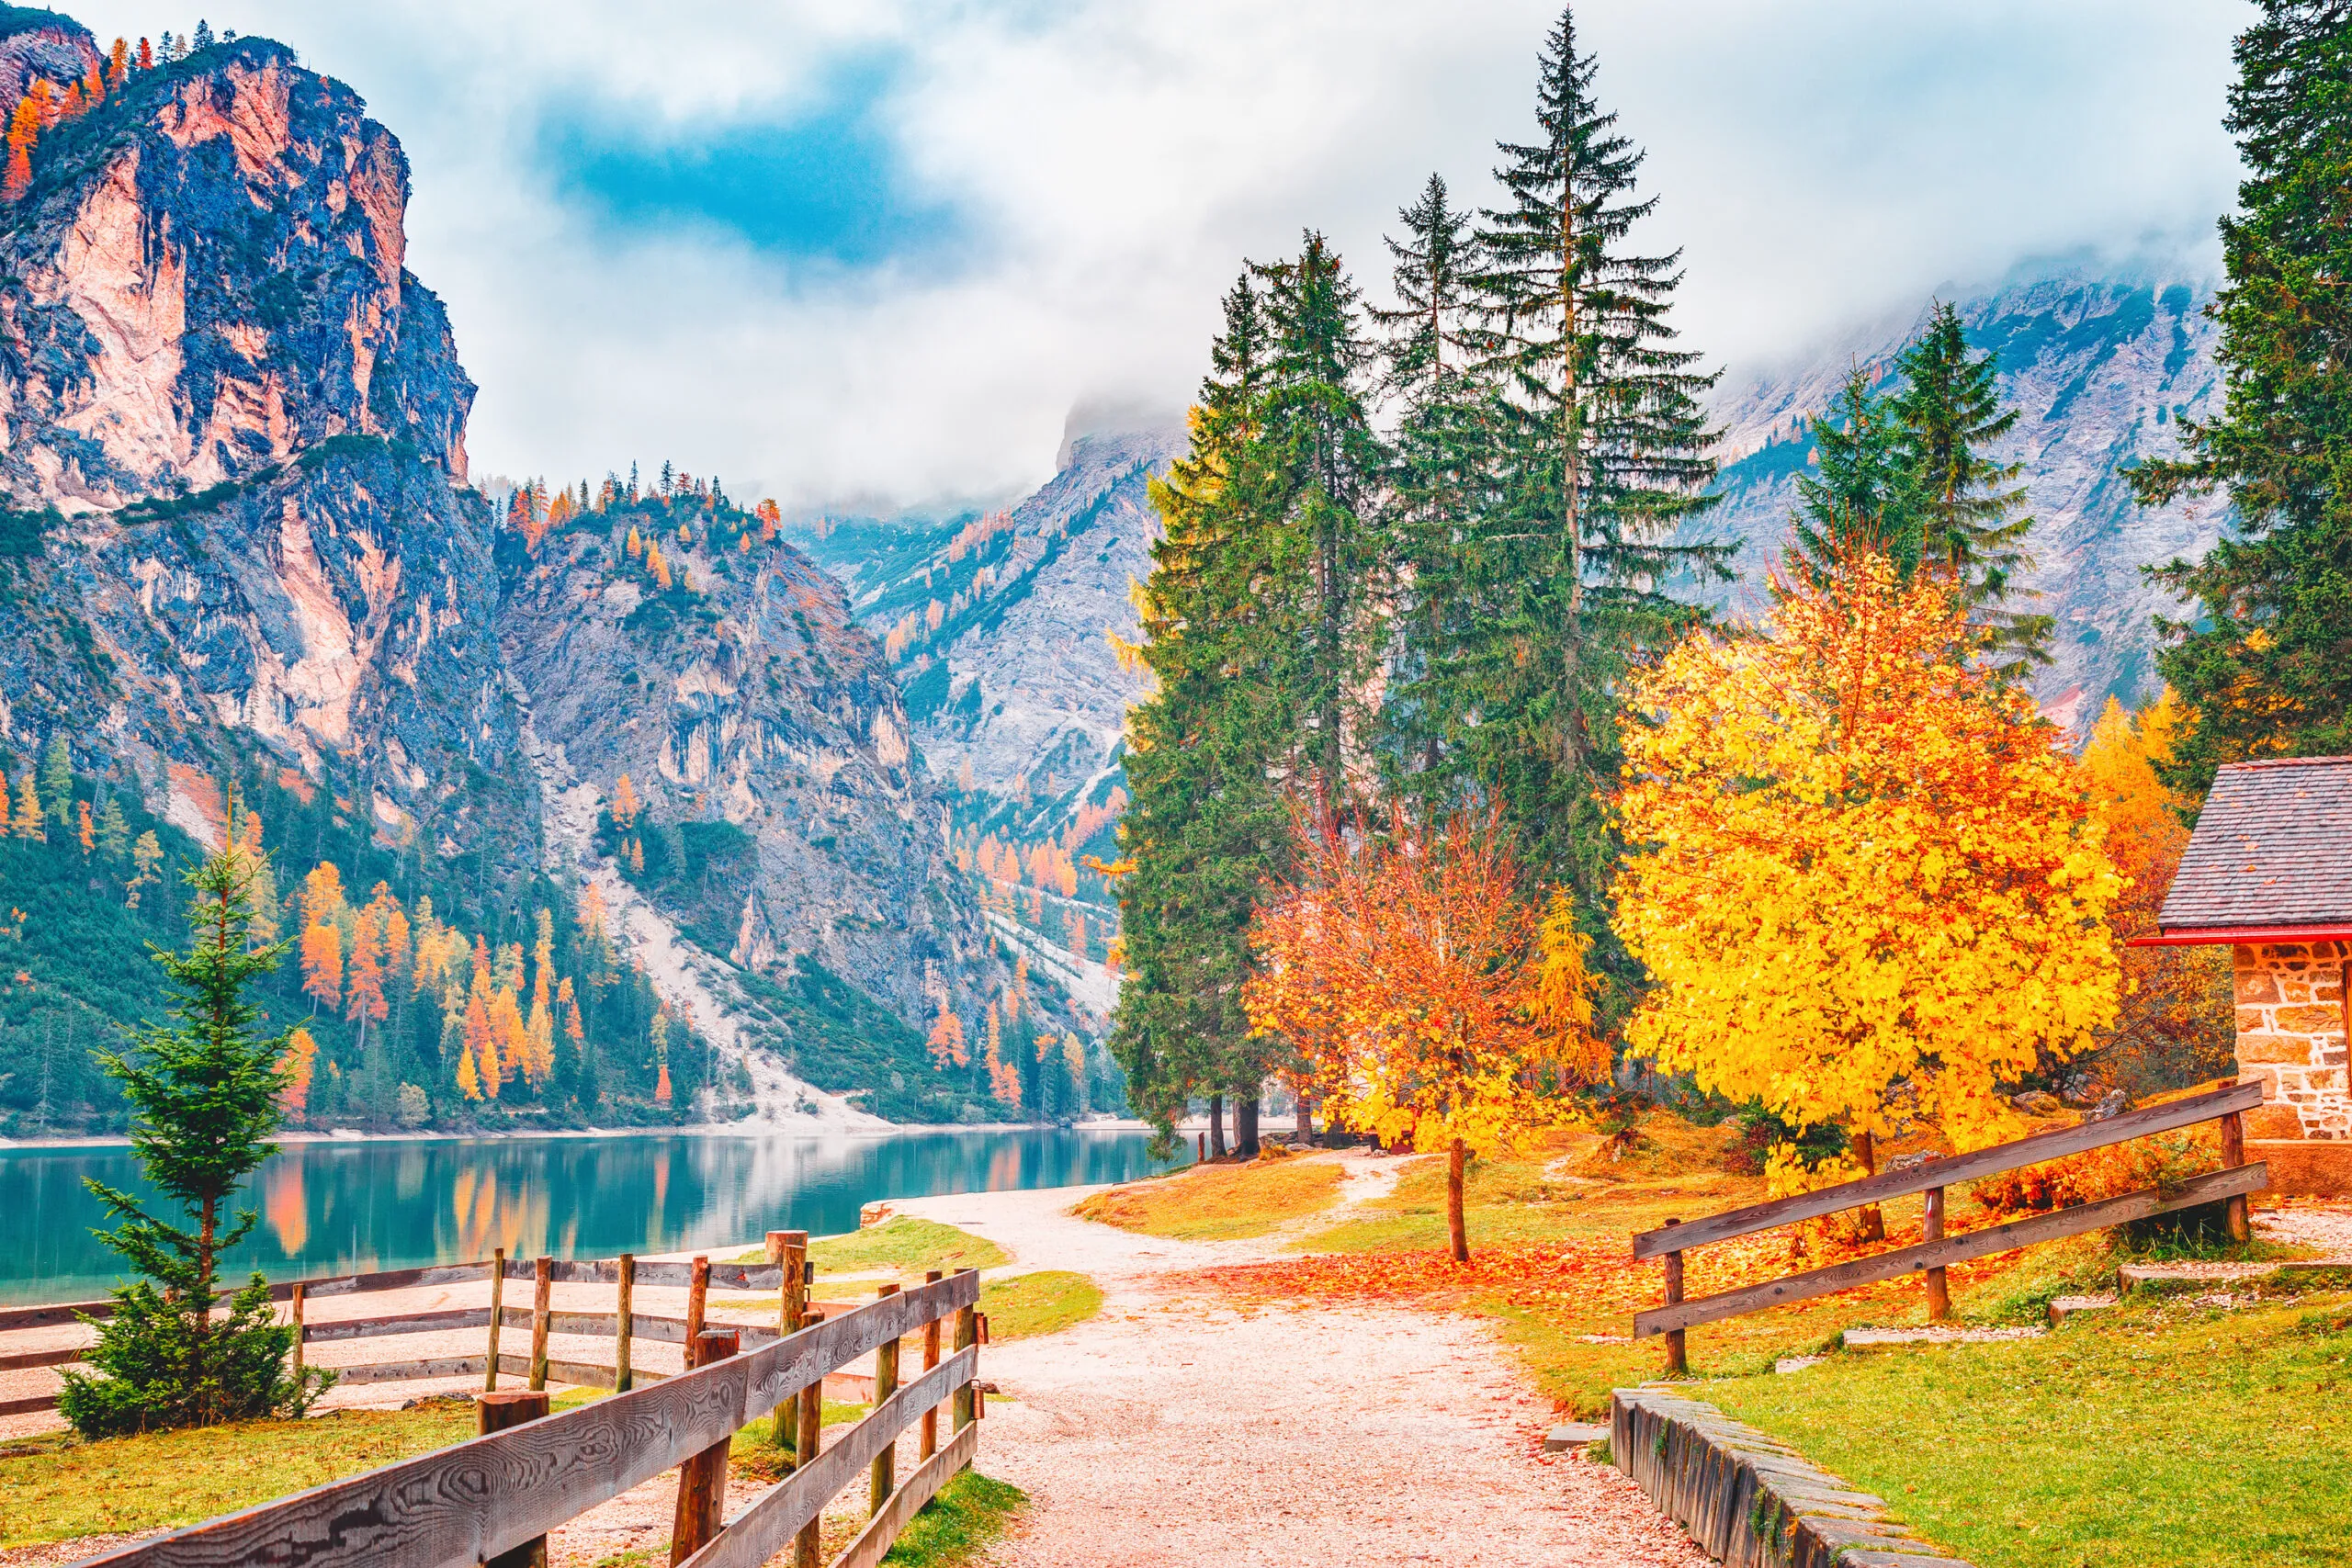 Herfstlandschap van het meer van Braies - lago di Braies op de achtergrond van de Alpen in Zuid-Tirol in Italië. Europese beroemde en zeer populaire reisbestemming. Herfstlandschap met gele bladeren van bomen aan de oever van het meer.